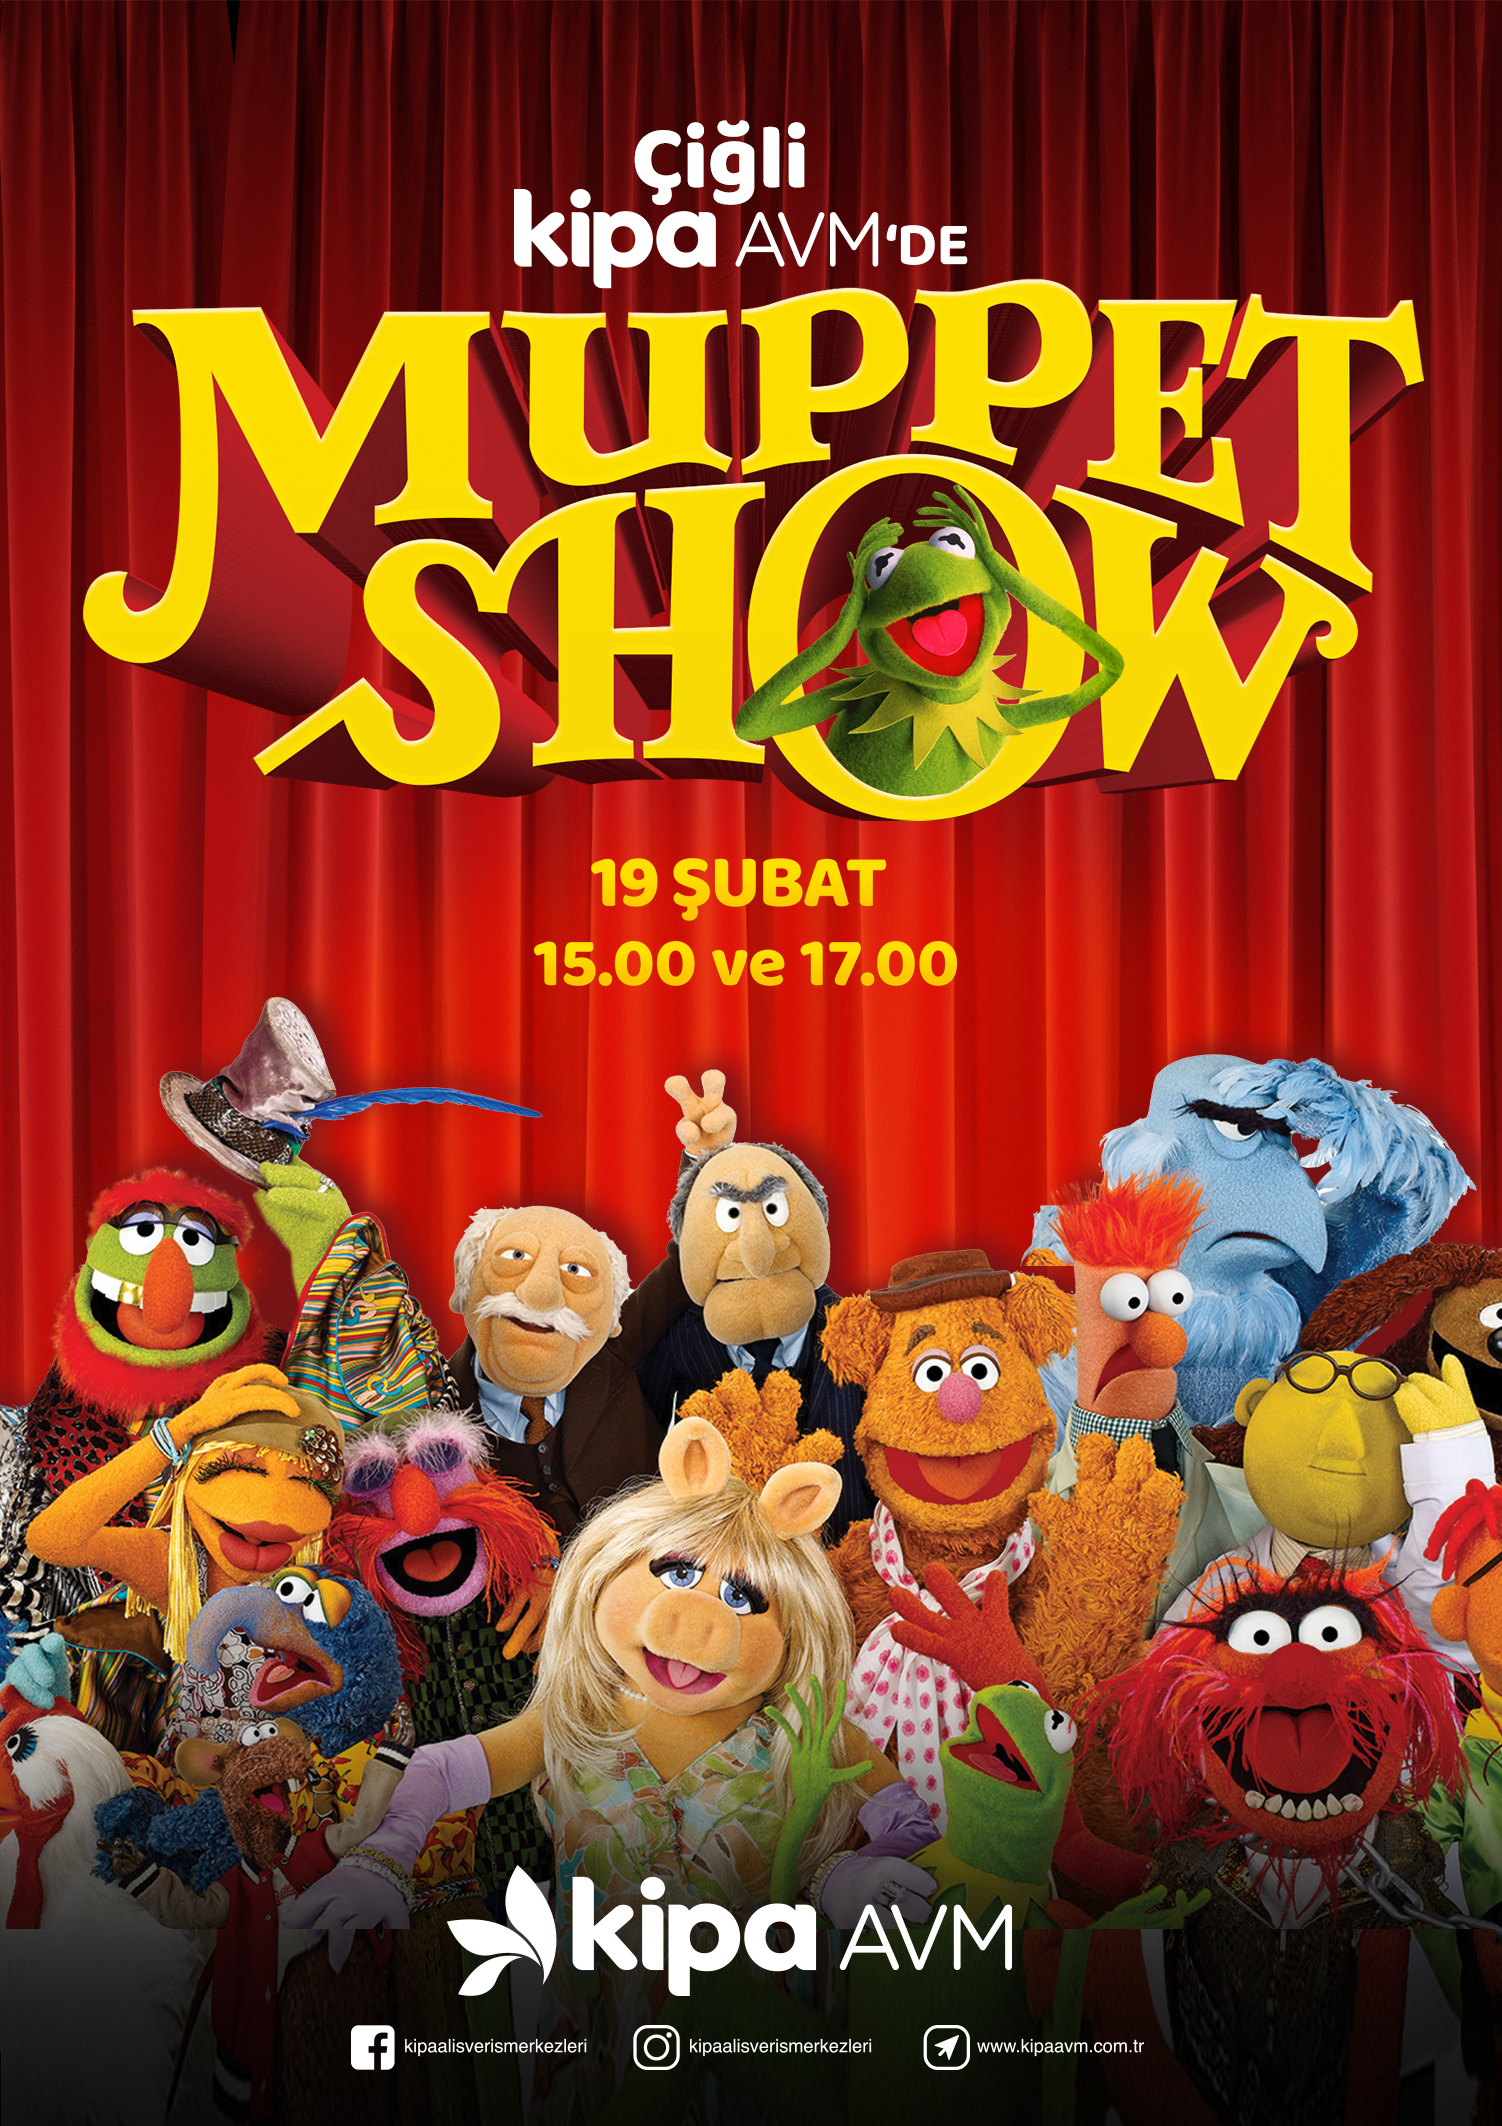 Çiğli Kipa AVM'de Muppet Show!
